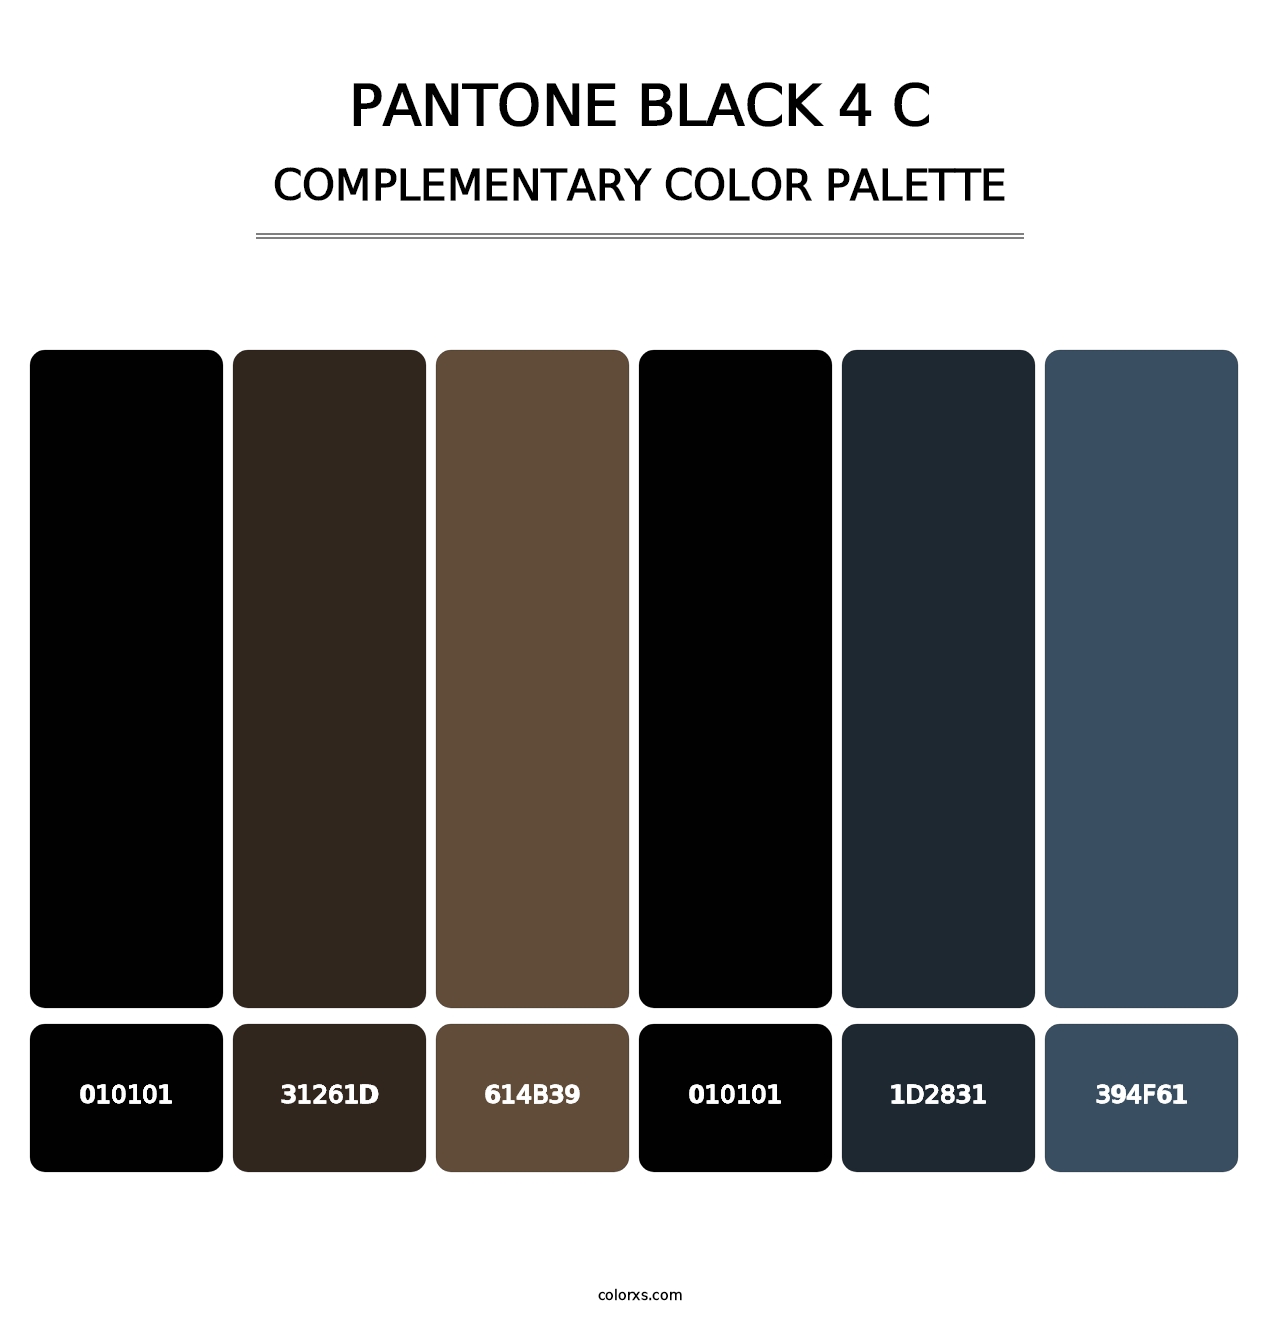 PANTONE Black 4 C - Complementary Color Palette